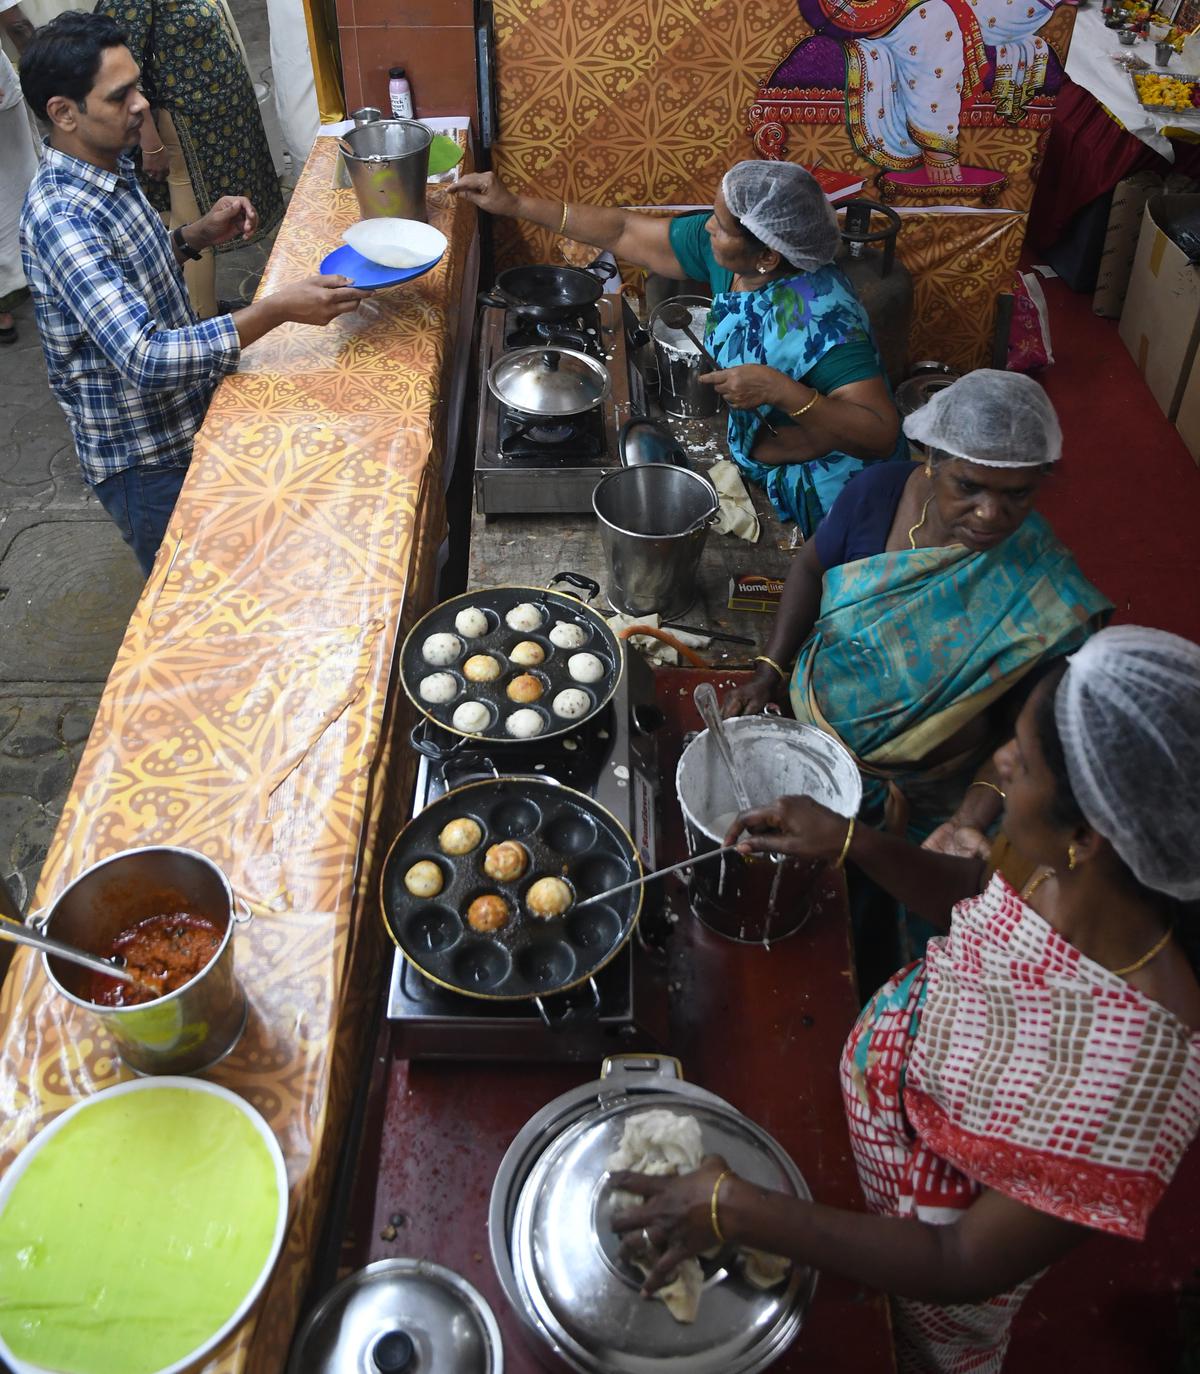 Kuzhi paniyaram live counter at Narada Gana Sabha’s canteen by Sri Saasthalaya catering services